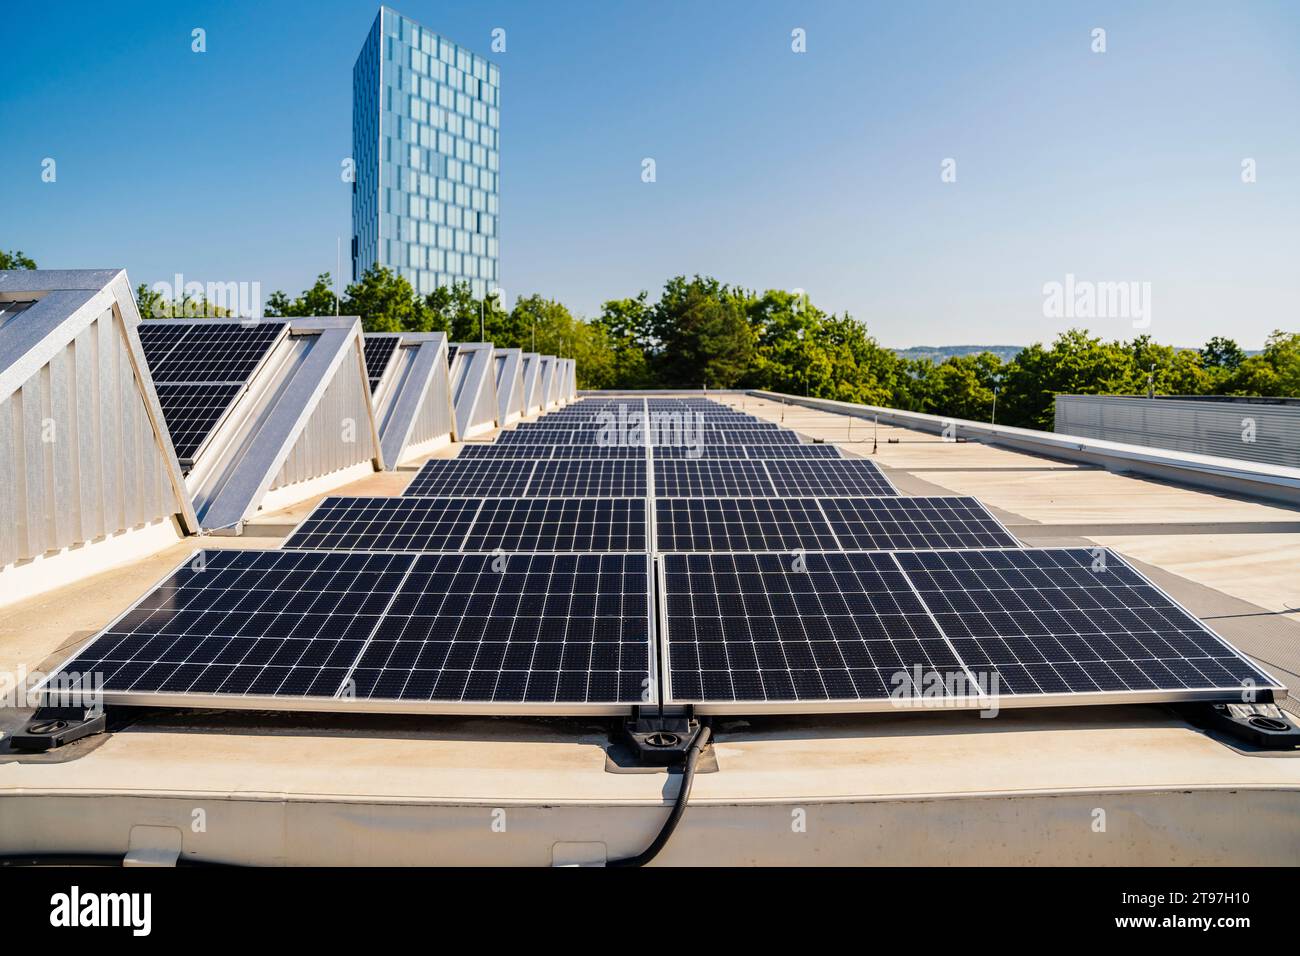 Auf dem Dach installierte Solarpaneele erzeugen unter klarem blauen Himmel saubere Energie Stockfoto